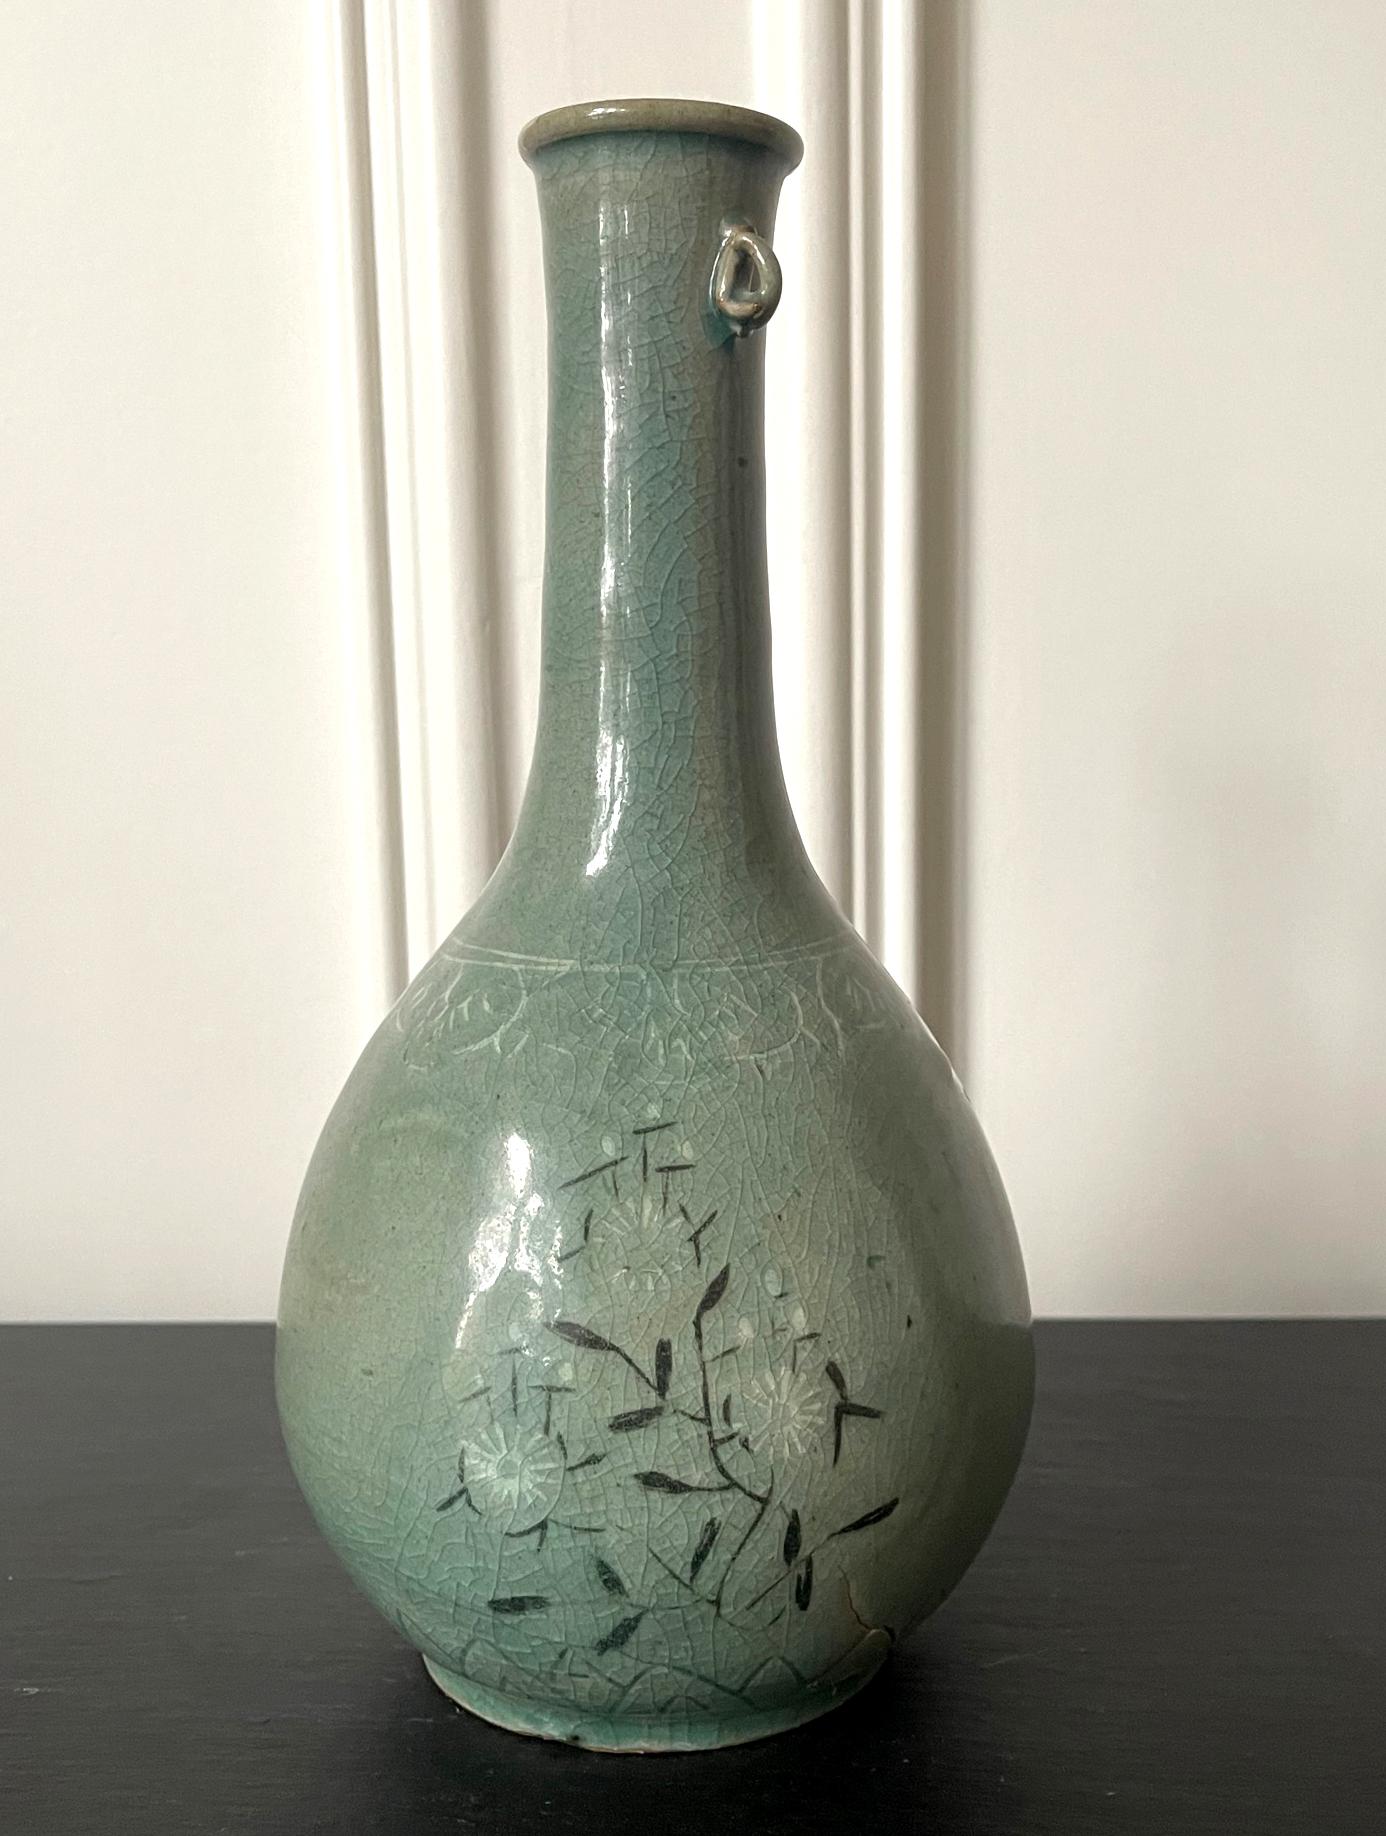 Flaschenvase aus koreanischer Celadon-Keramik mit Einlegearbeit aus der Goryeo-Dynastie (918 bis 1392 n. Chr.), ca. 12. Jahrhundert. Mit seinem länglichen Hals, der in einer sanften und eleganten Rundung in den birnenförmigen Korpus übergeht, und